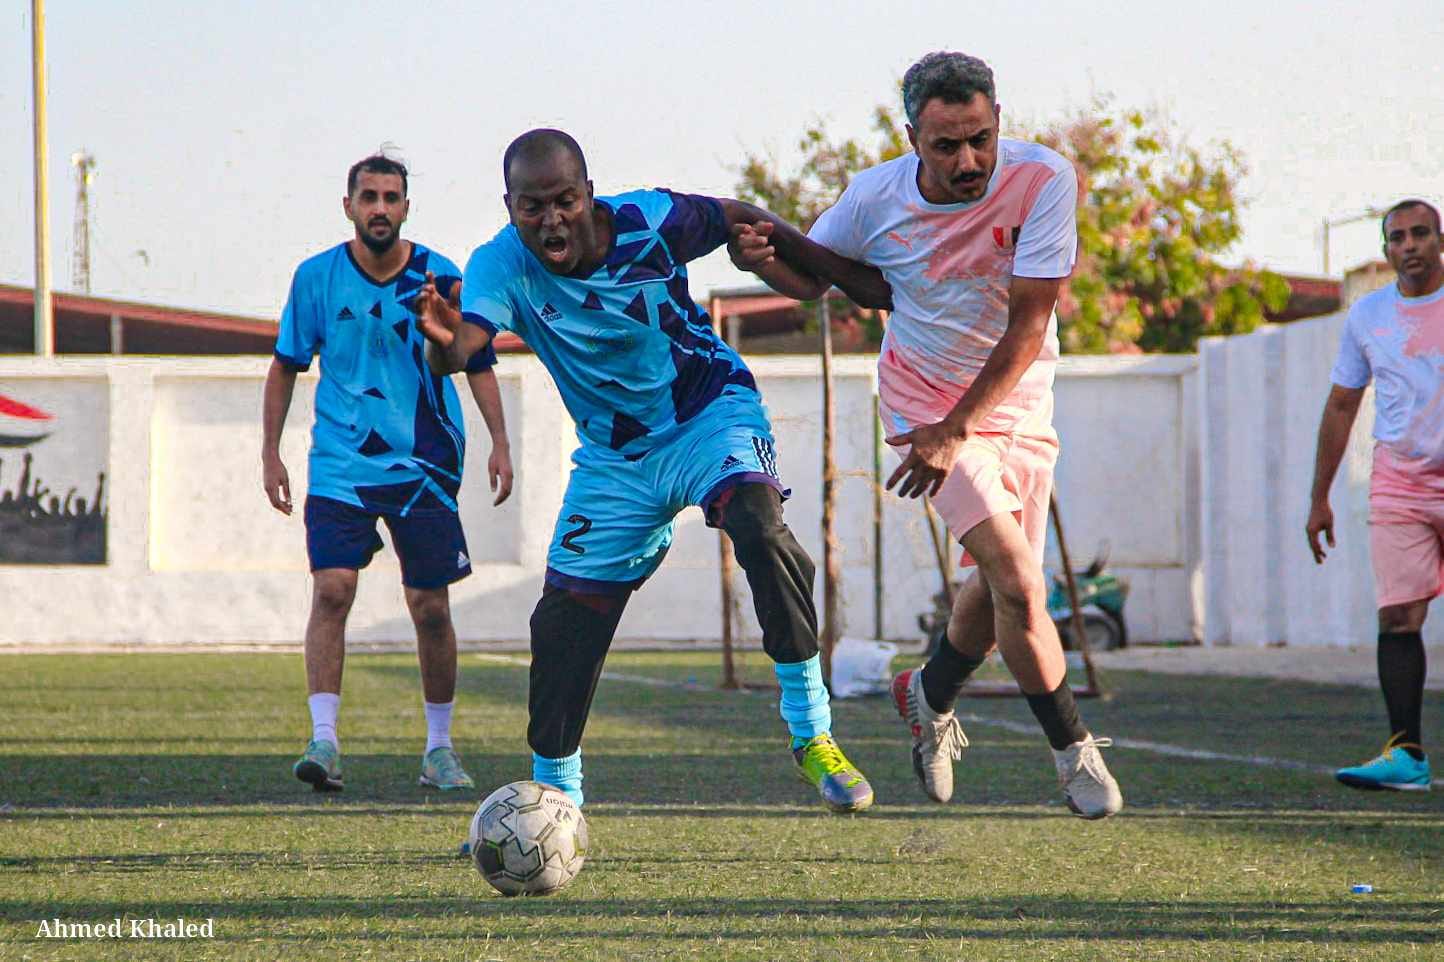 في دوري كأس عدن للشركات.. الشباب والرياضة والموانئ يتقاسمان النقاط والتربية يستعيد التوزان